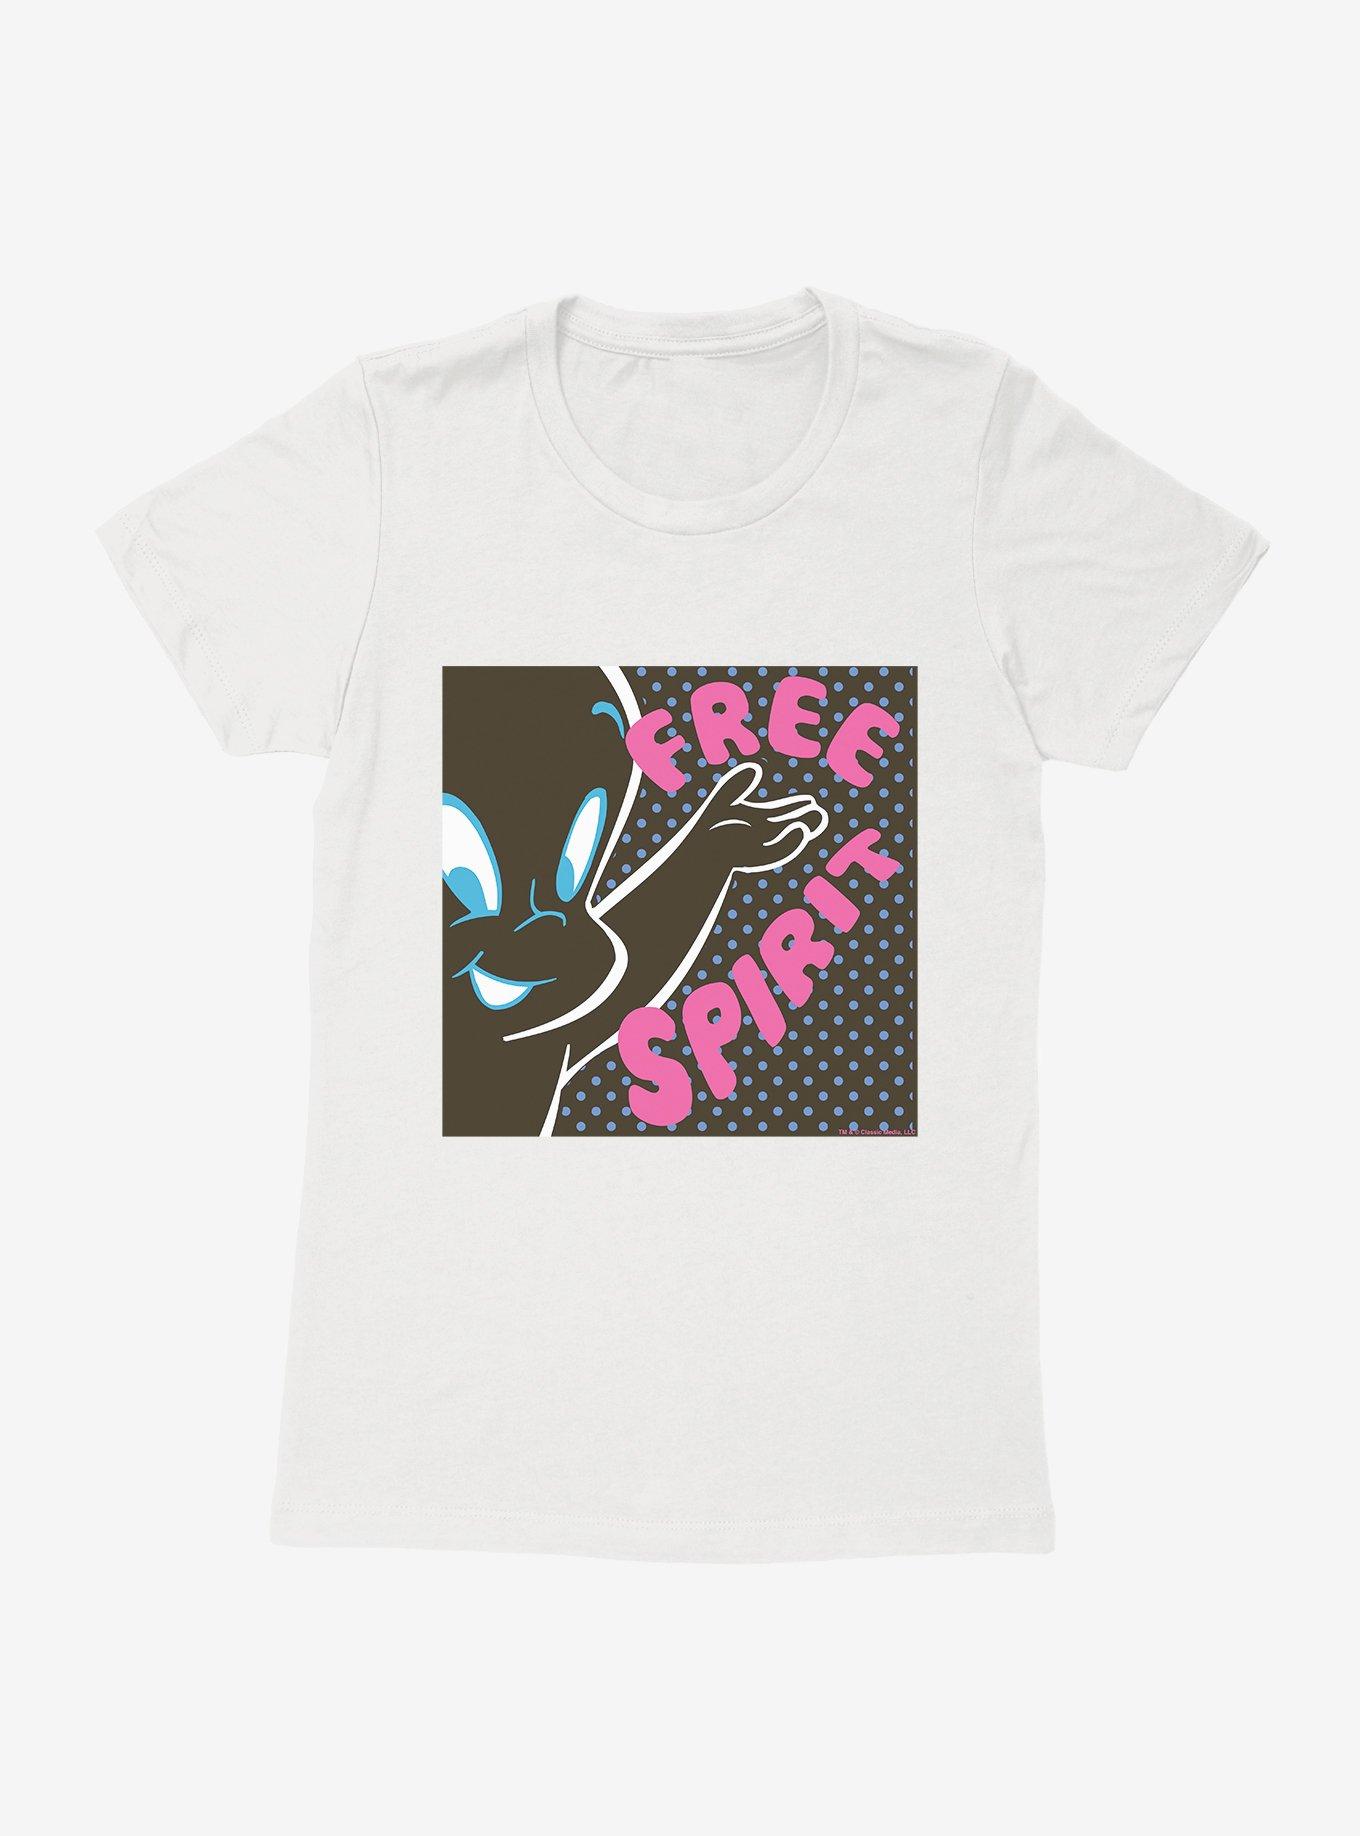 Boxlunch Casper The Friendly Ghost Pop Comic Art Free Spirit Womens T-Shirt